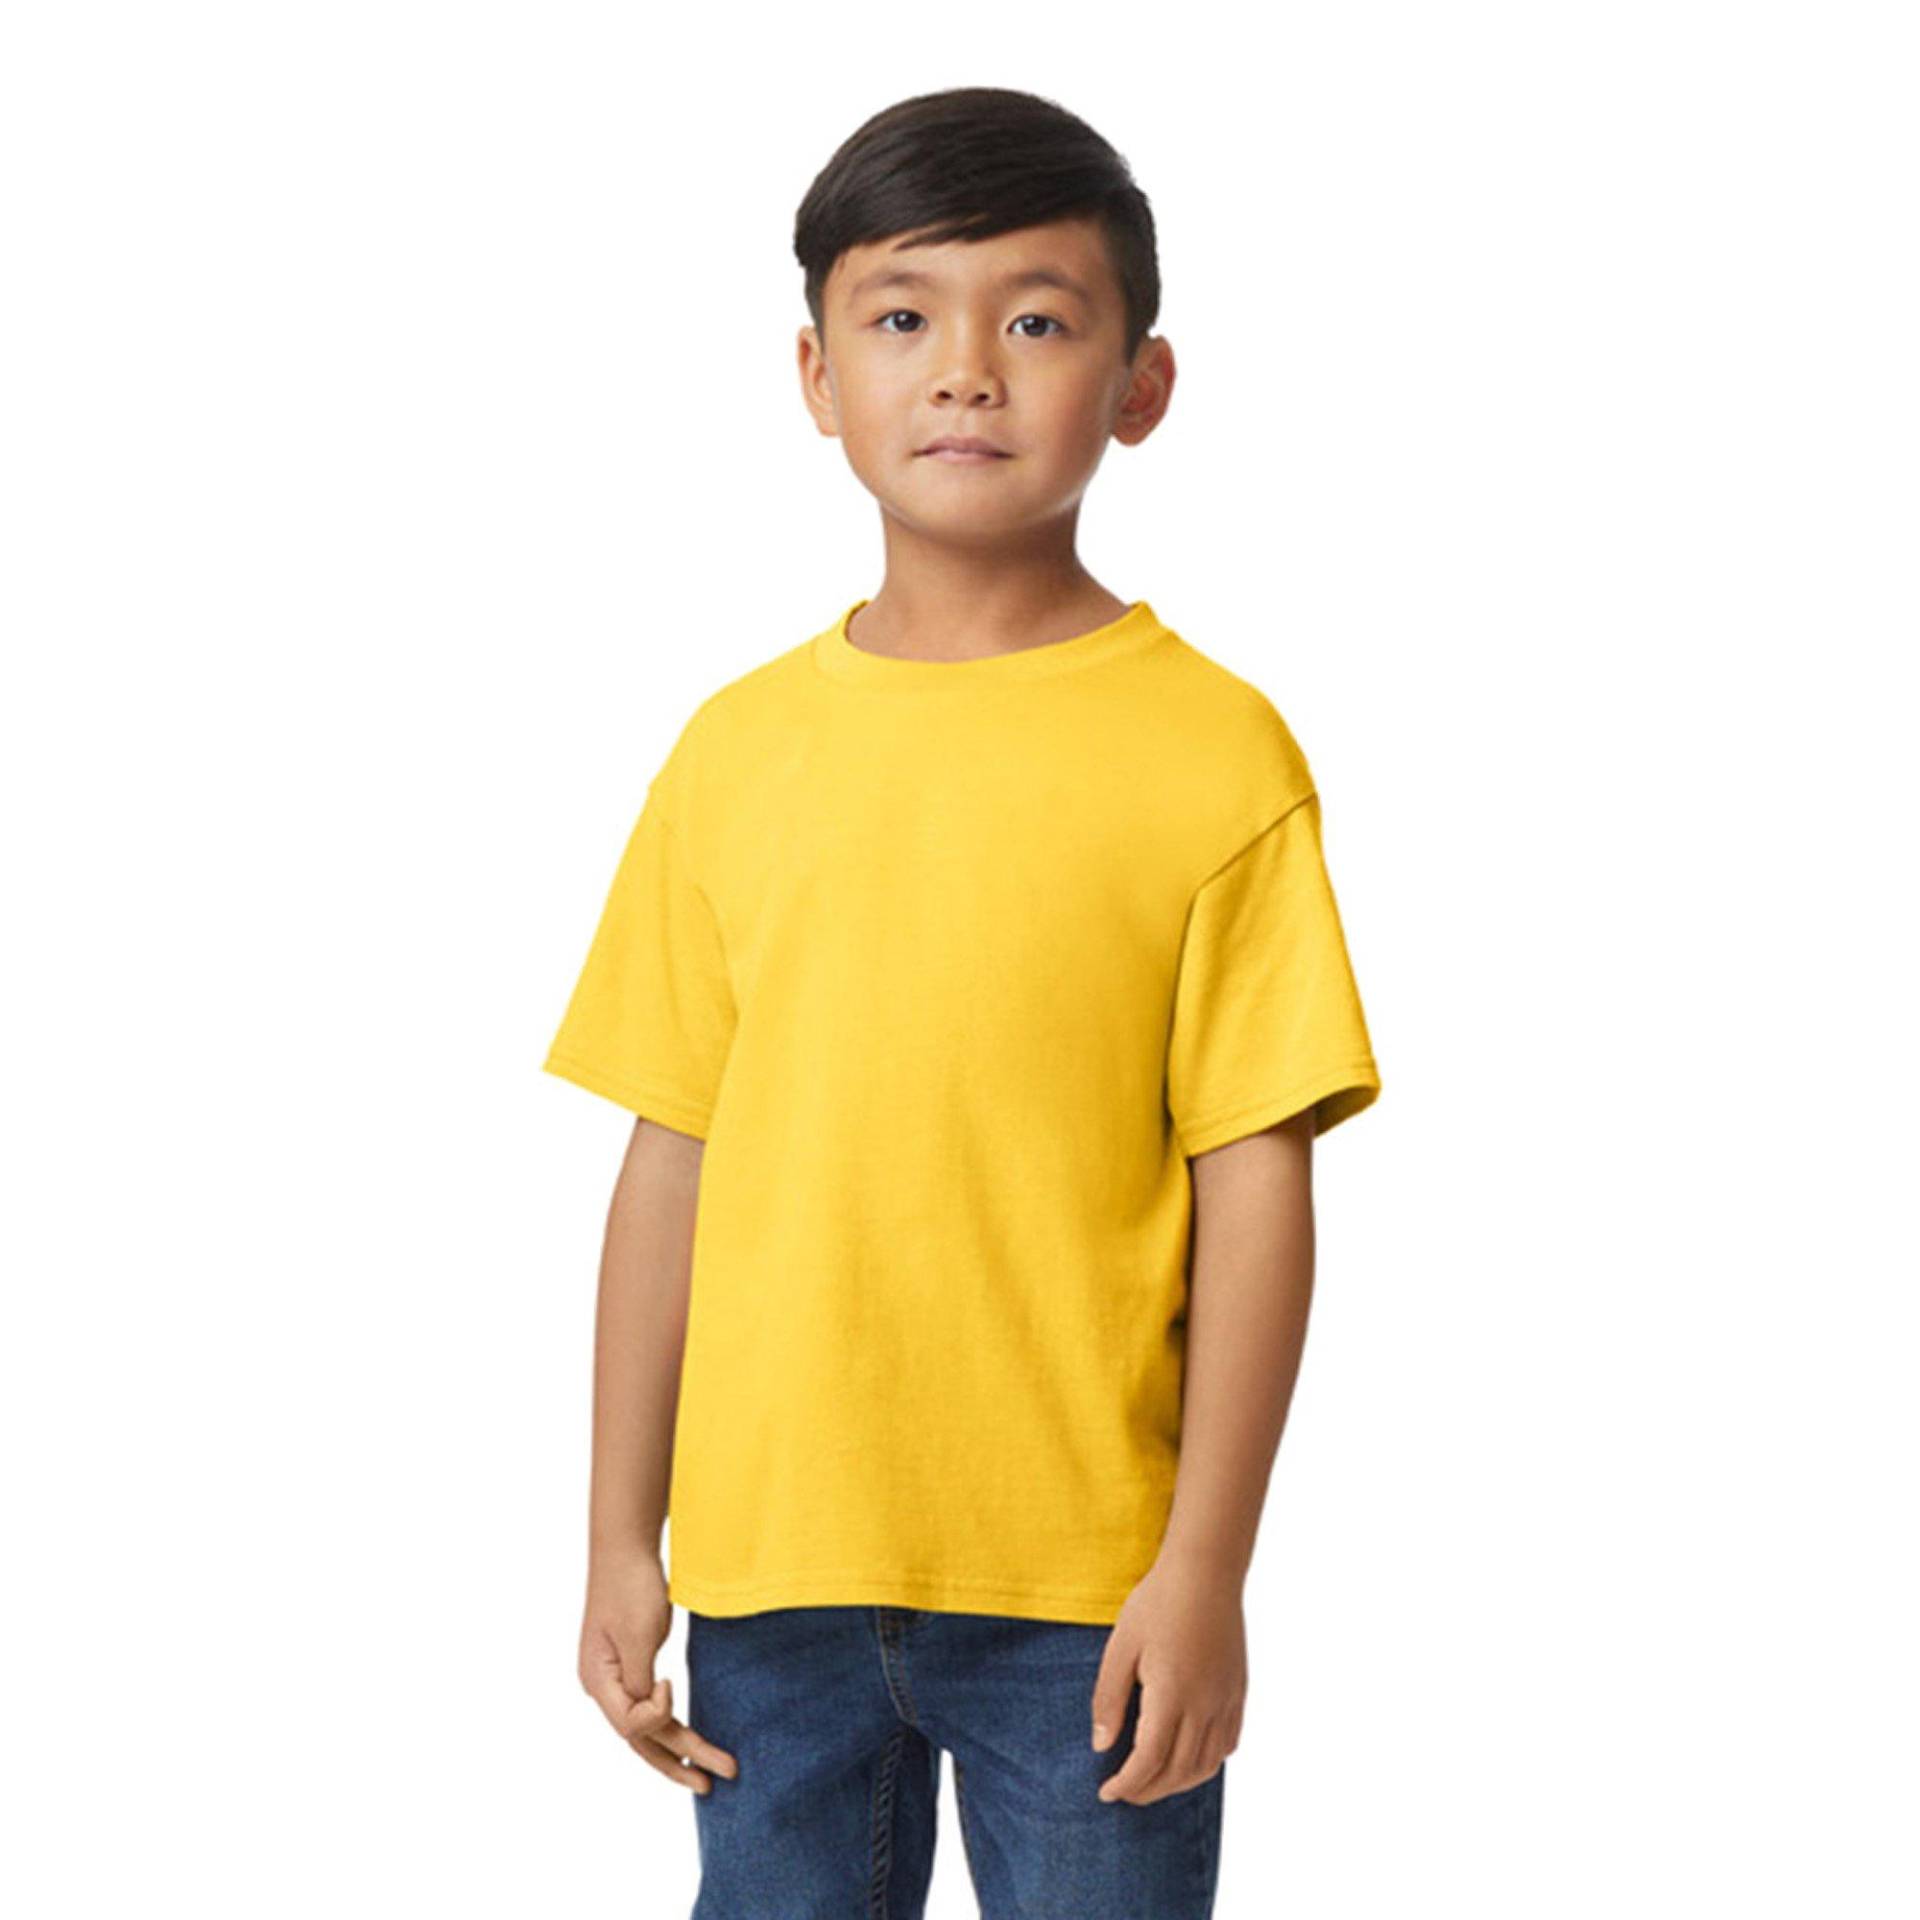 Softstyle Tshirt Mädchen Gelb Bunt S von Gildan